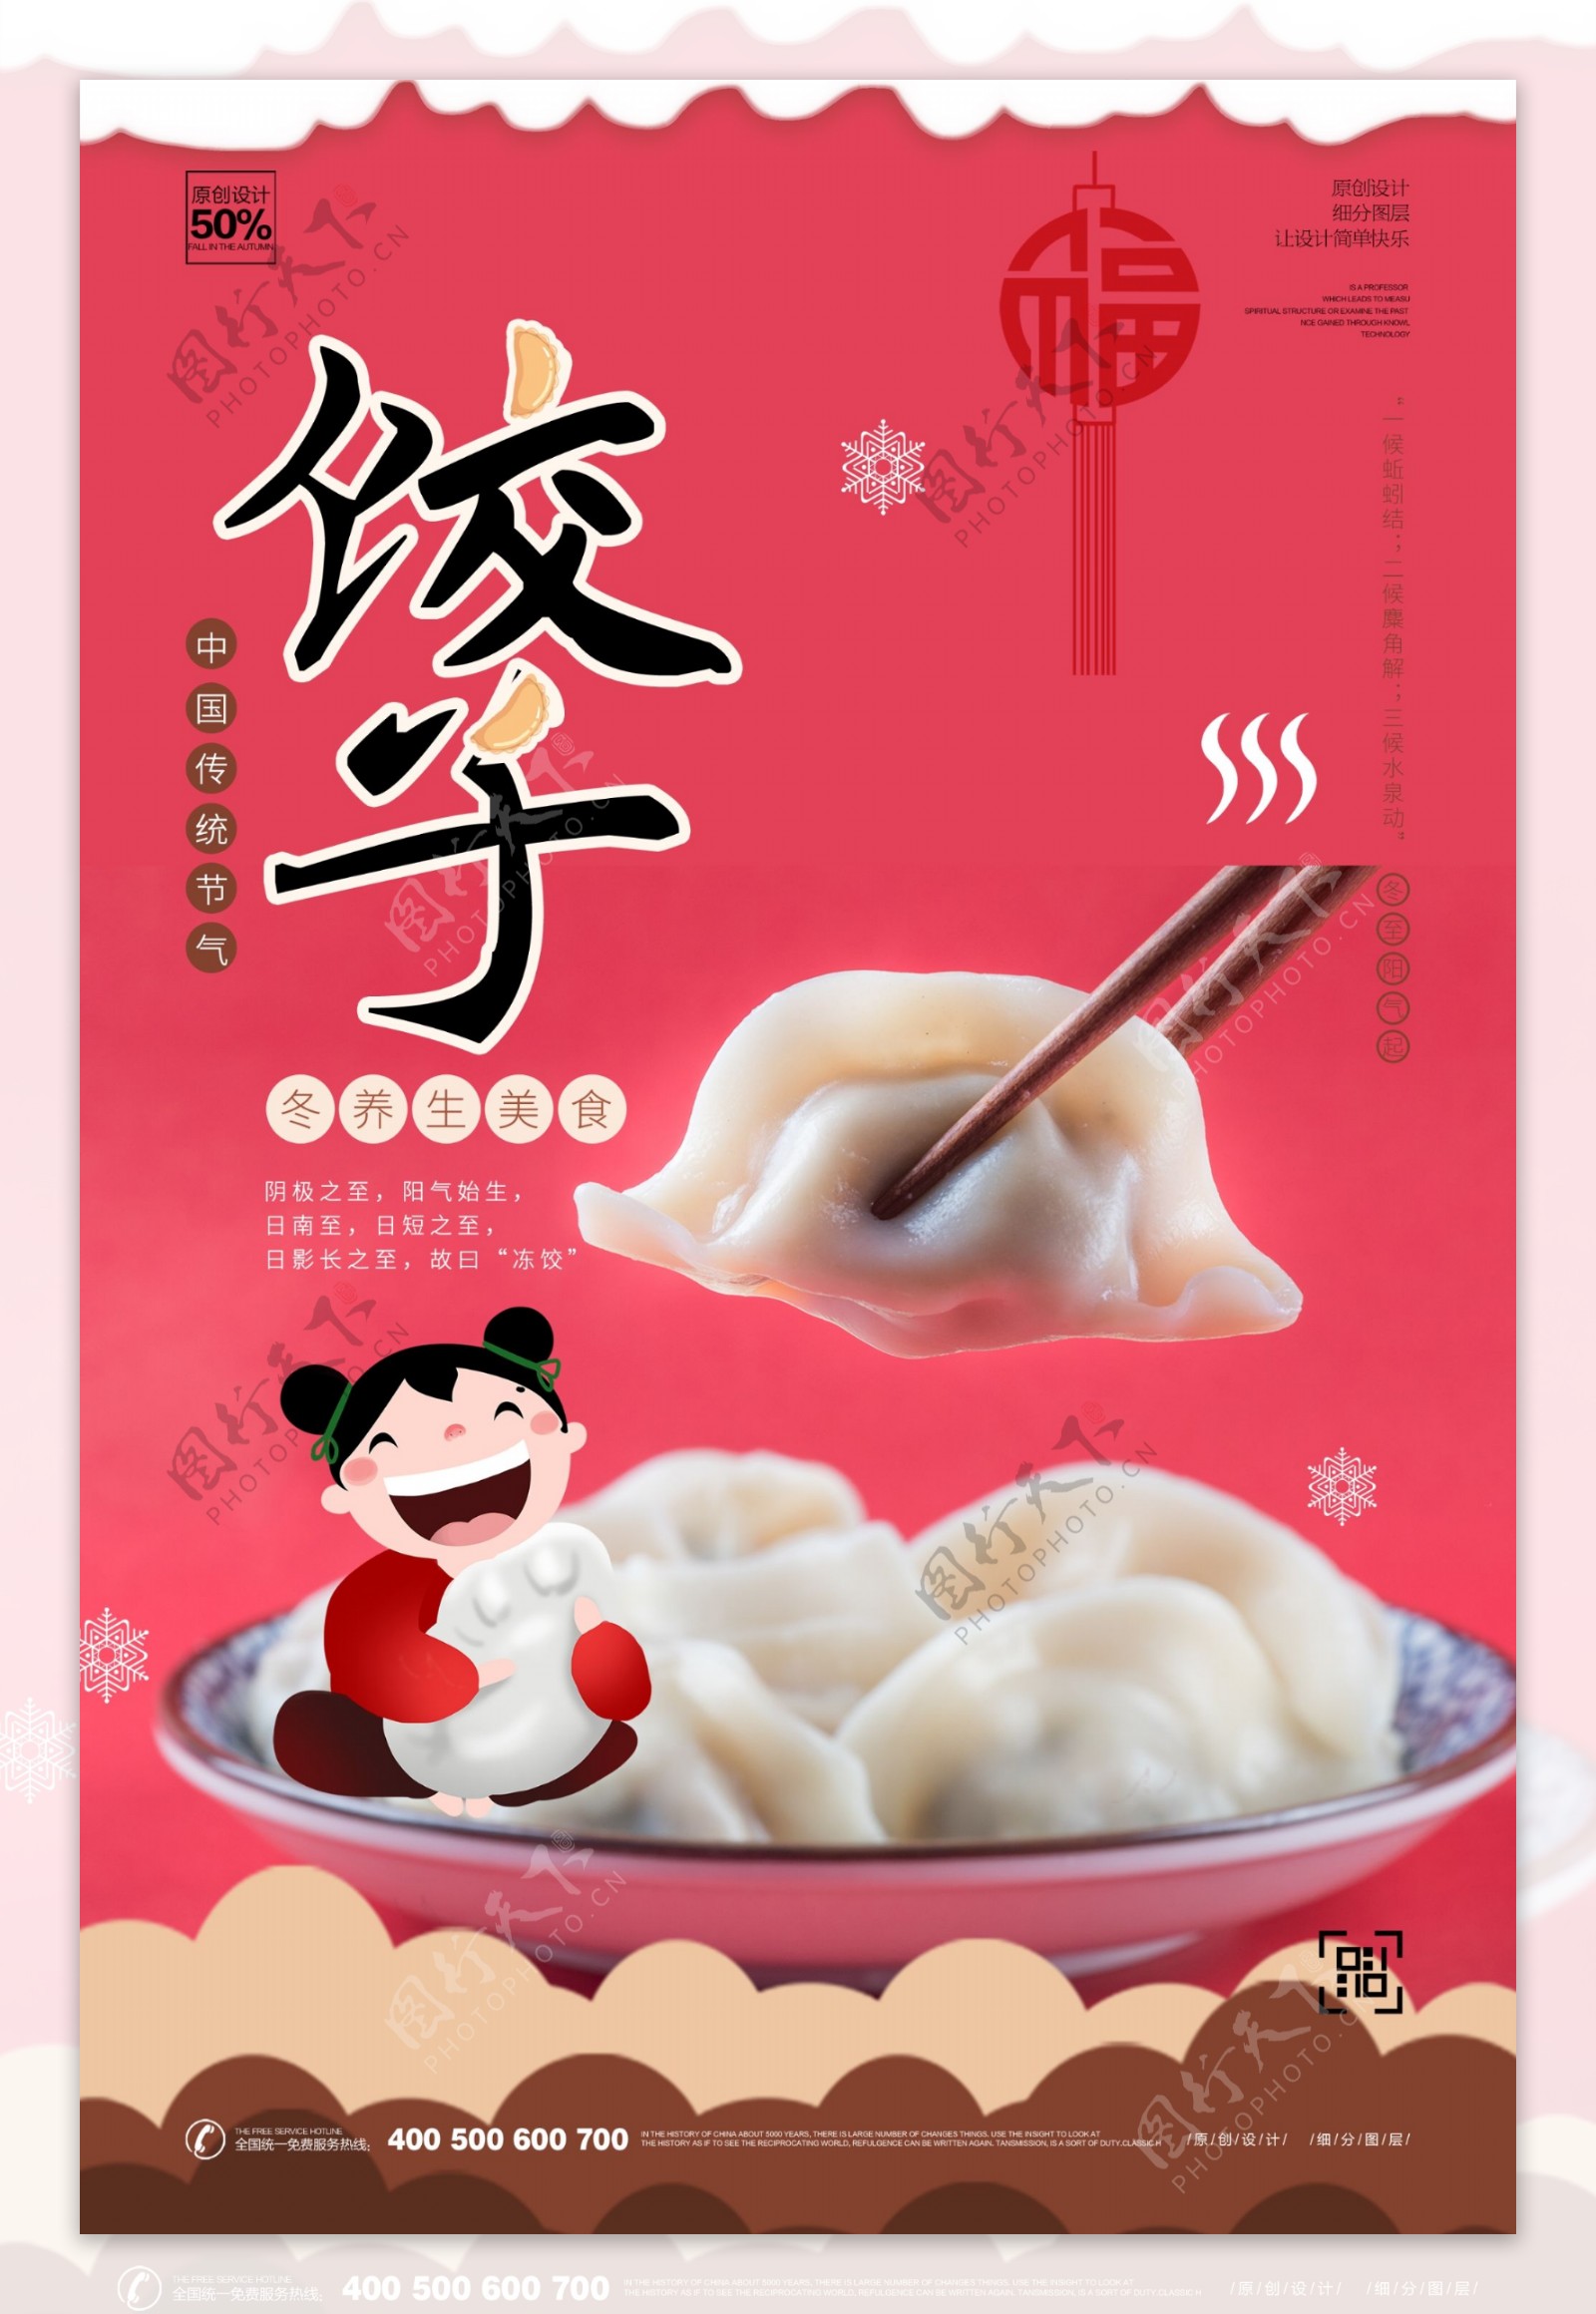 插画饺子美食宣传海报模板设计